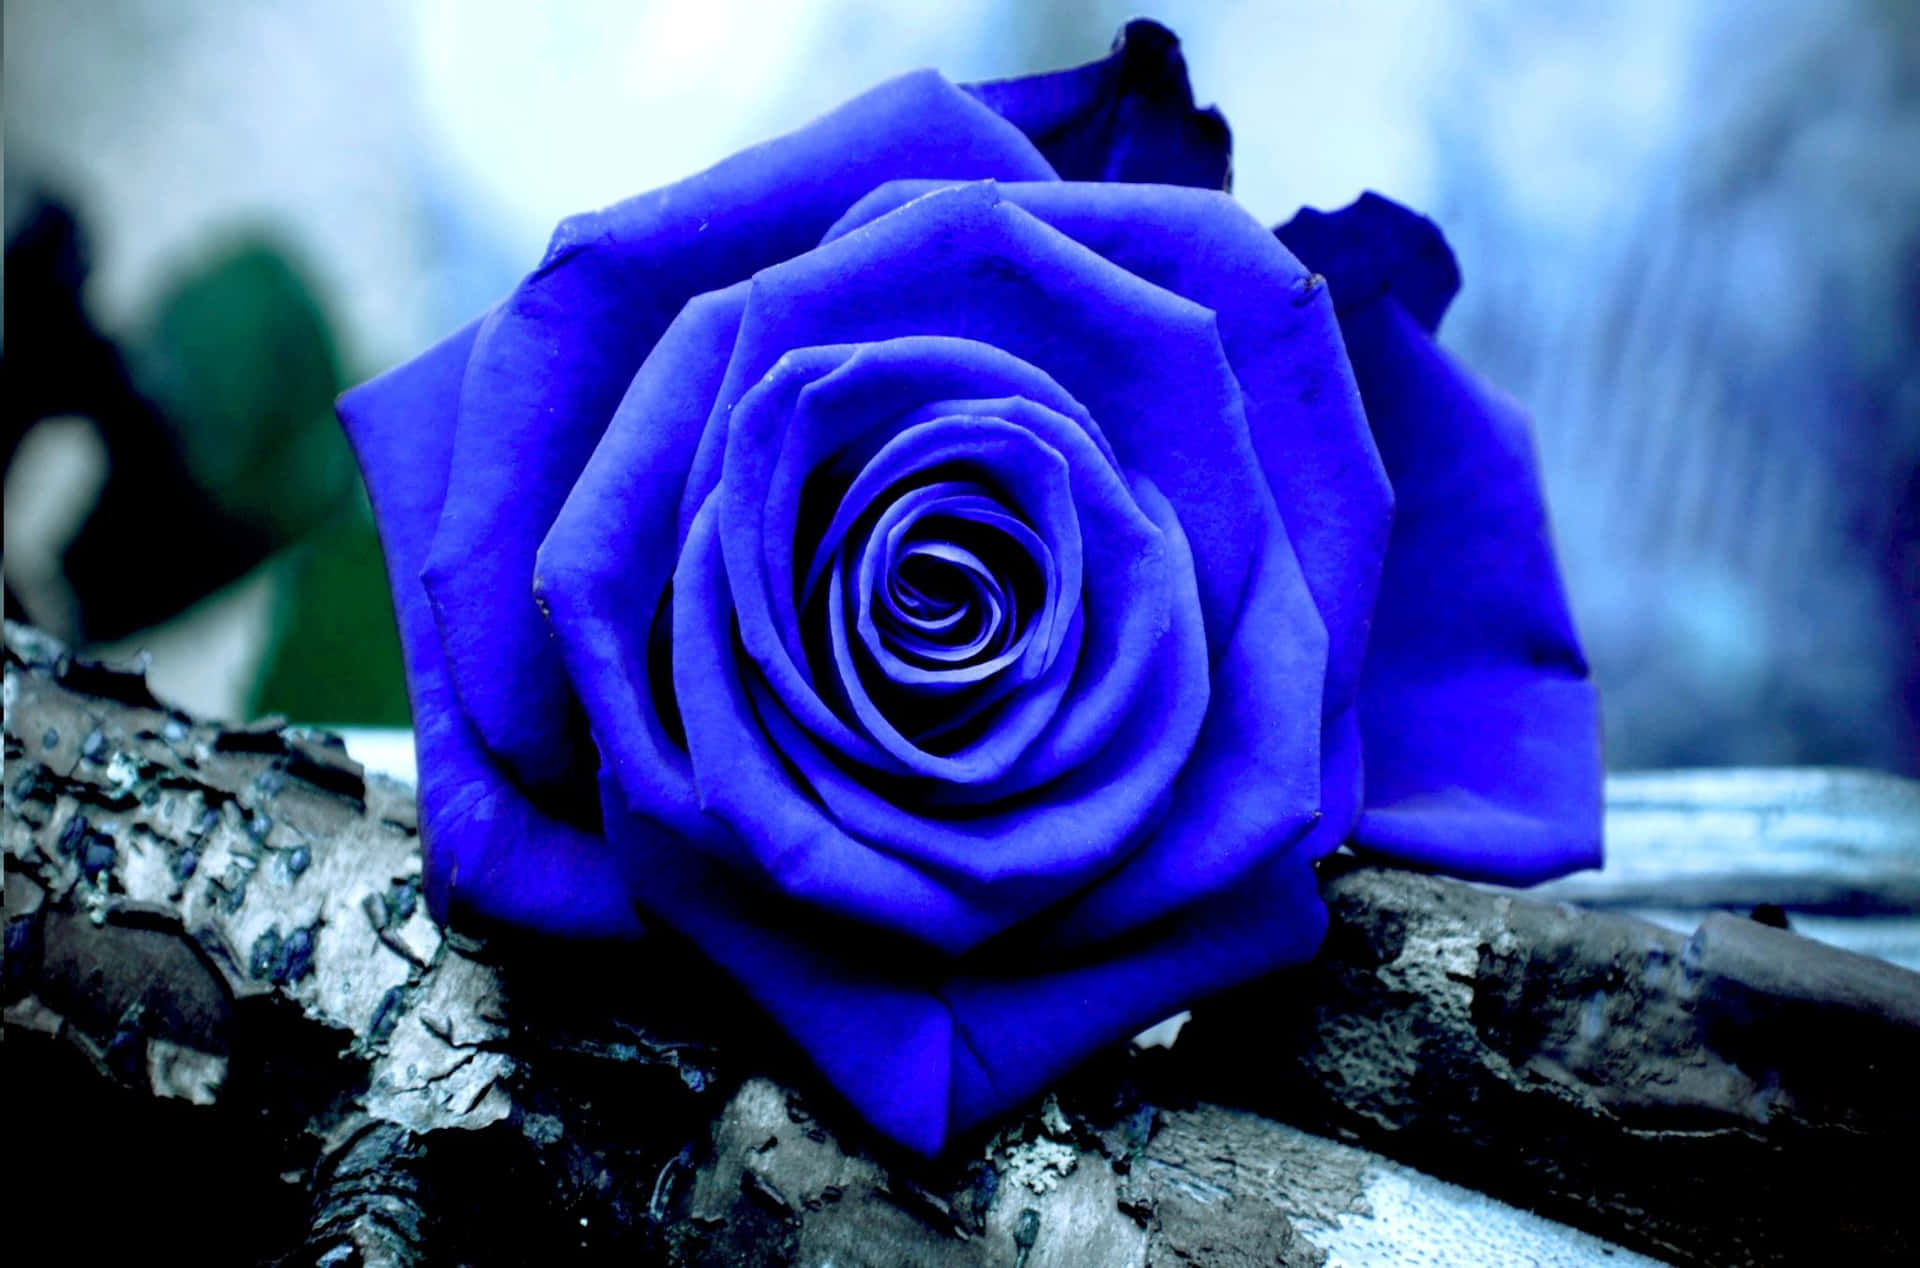 Eineverlockende Blaue Rose Blüht Am Morgen. Wallpaper